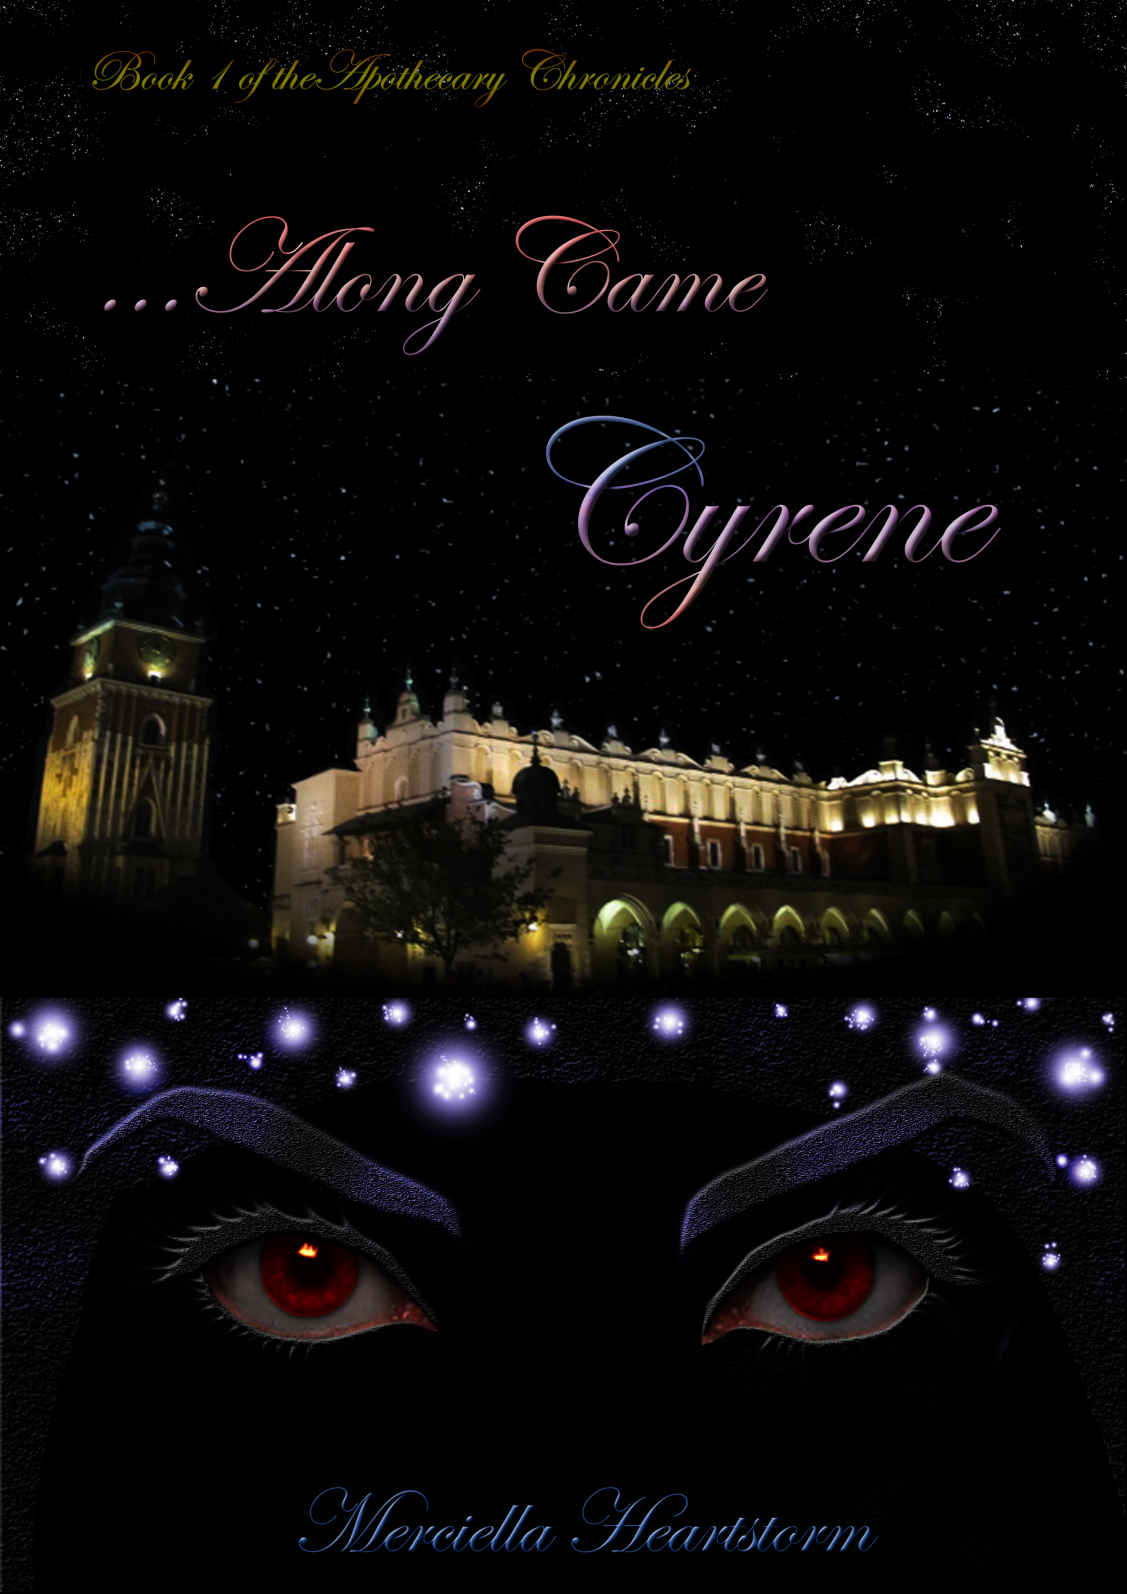 ...Along Came Cyrene